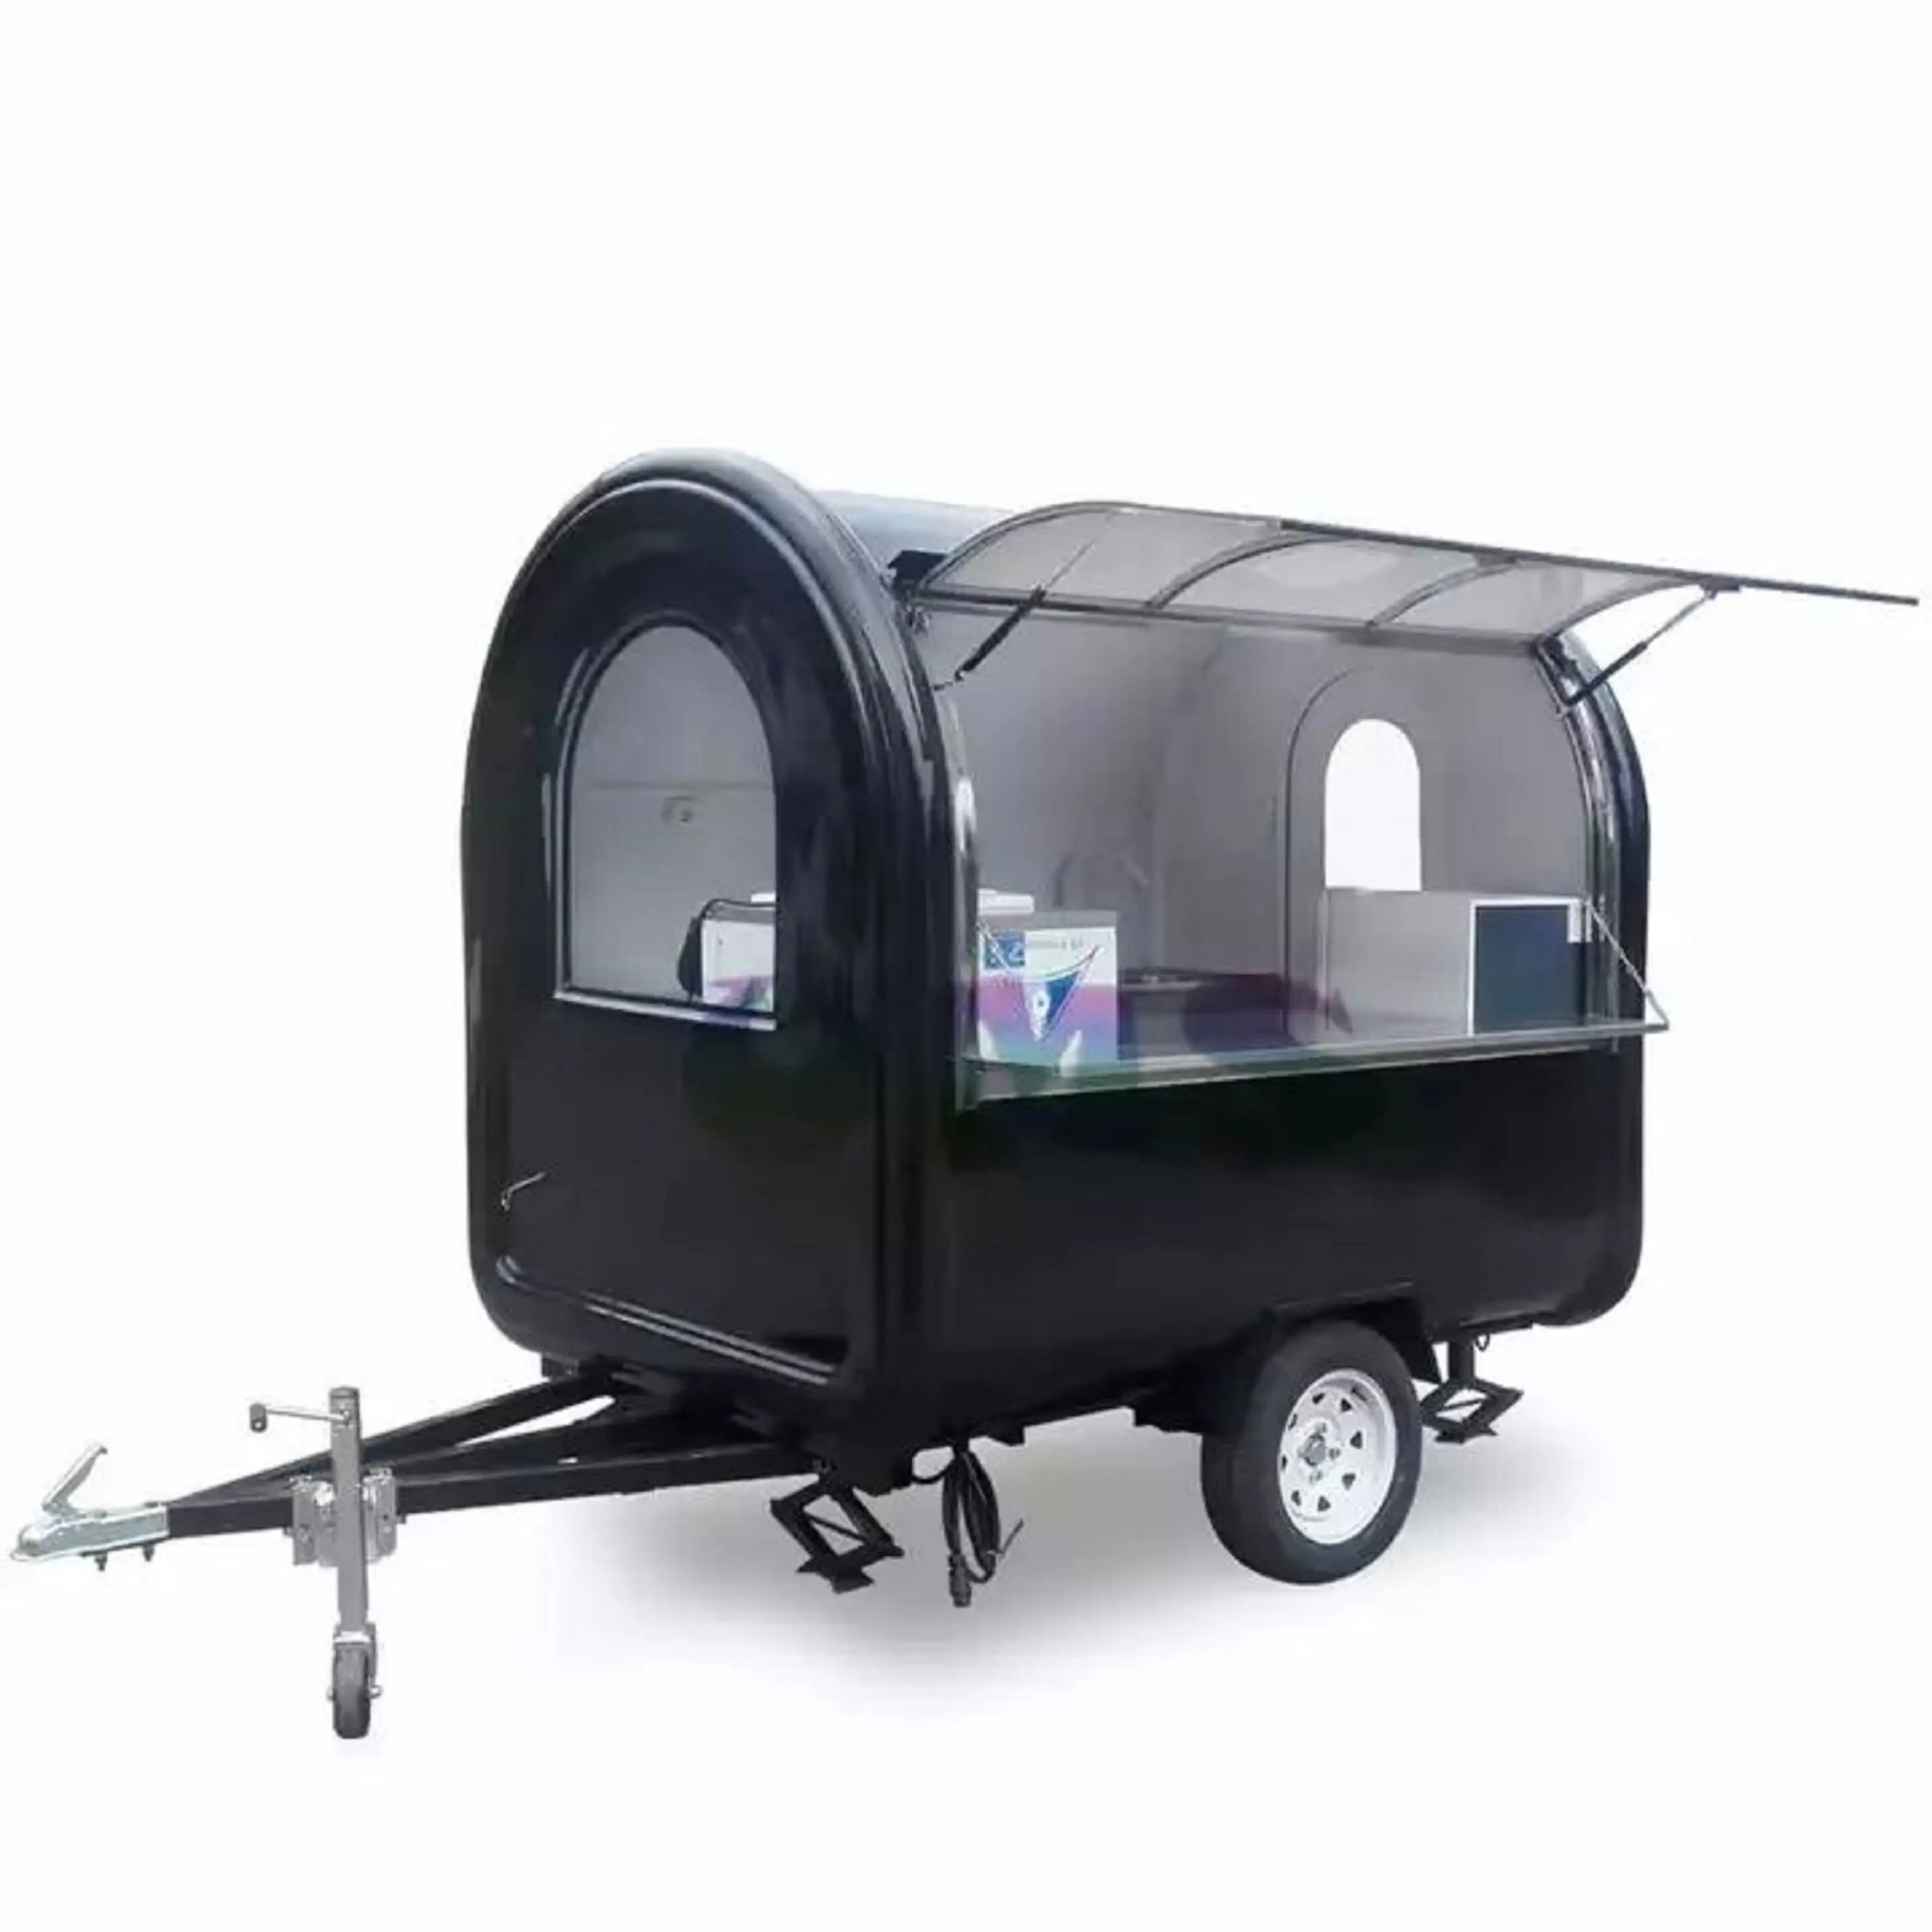 Caminhão de carrinho de comida padrão australiana, caminhão móvel rápido de carrinho com carro congelado de cozinha personalizado